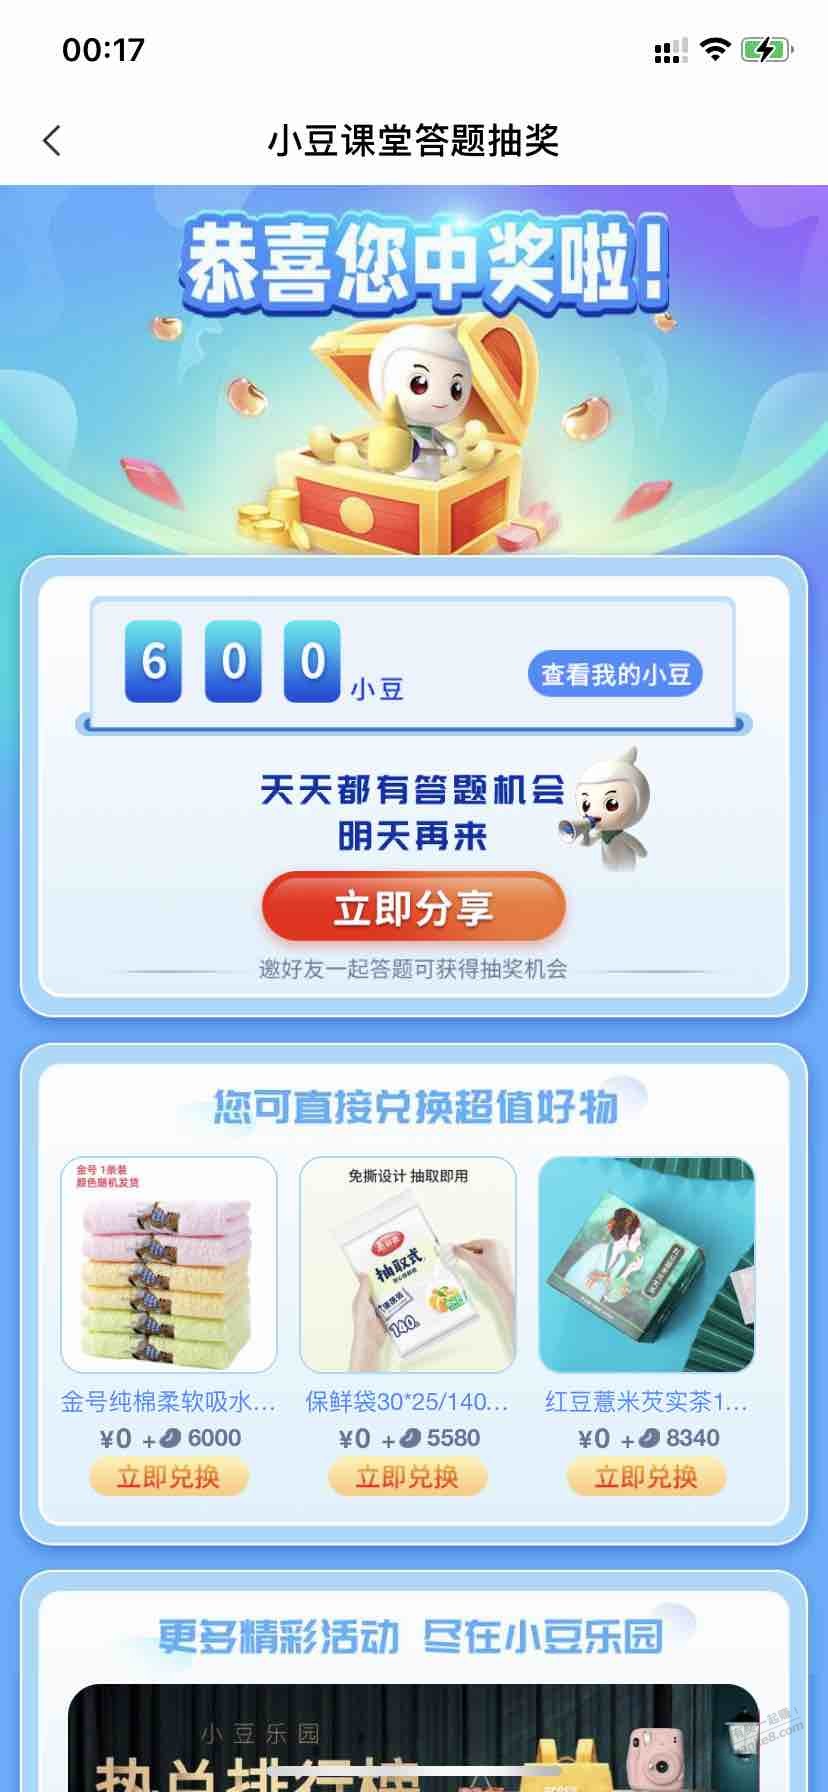 600豆-农行小豆大水-惠小助(52huixz.com)